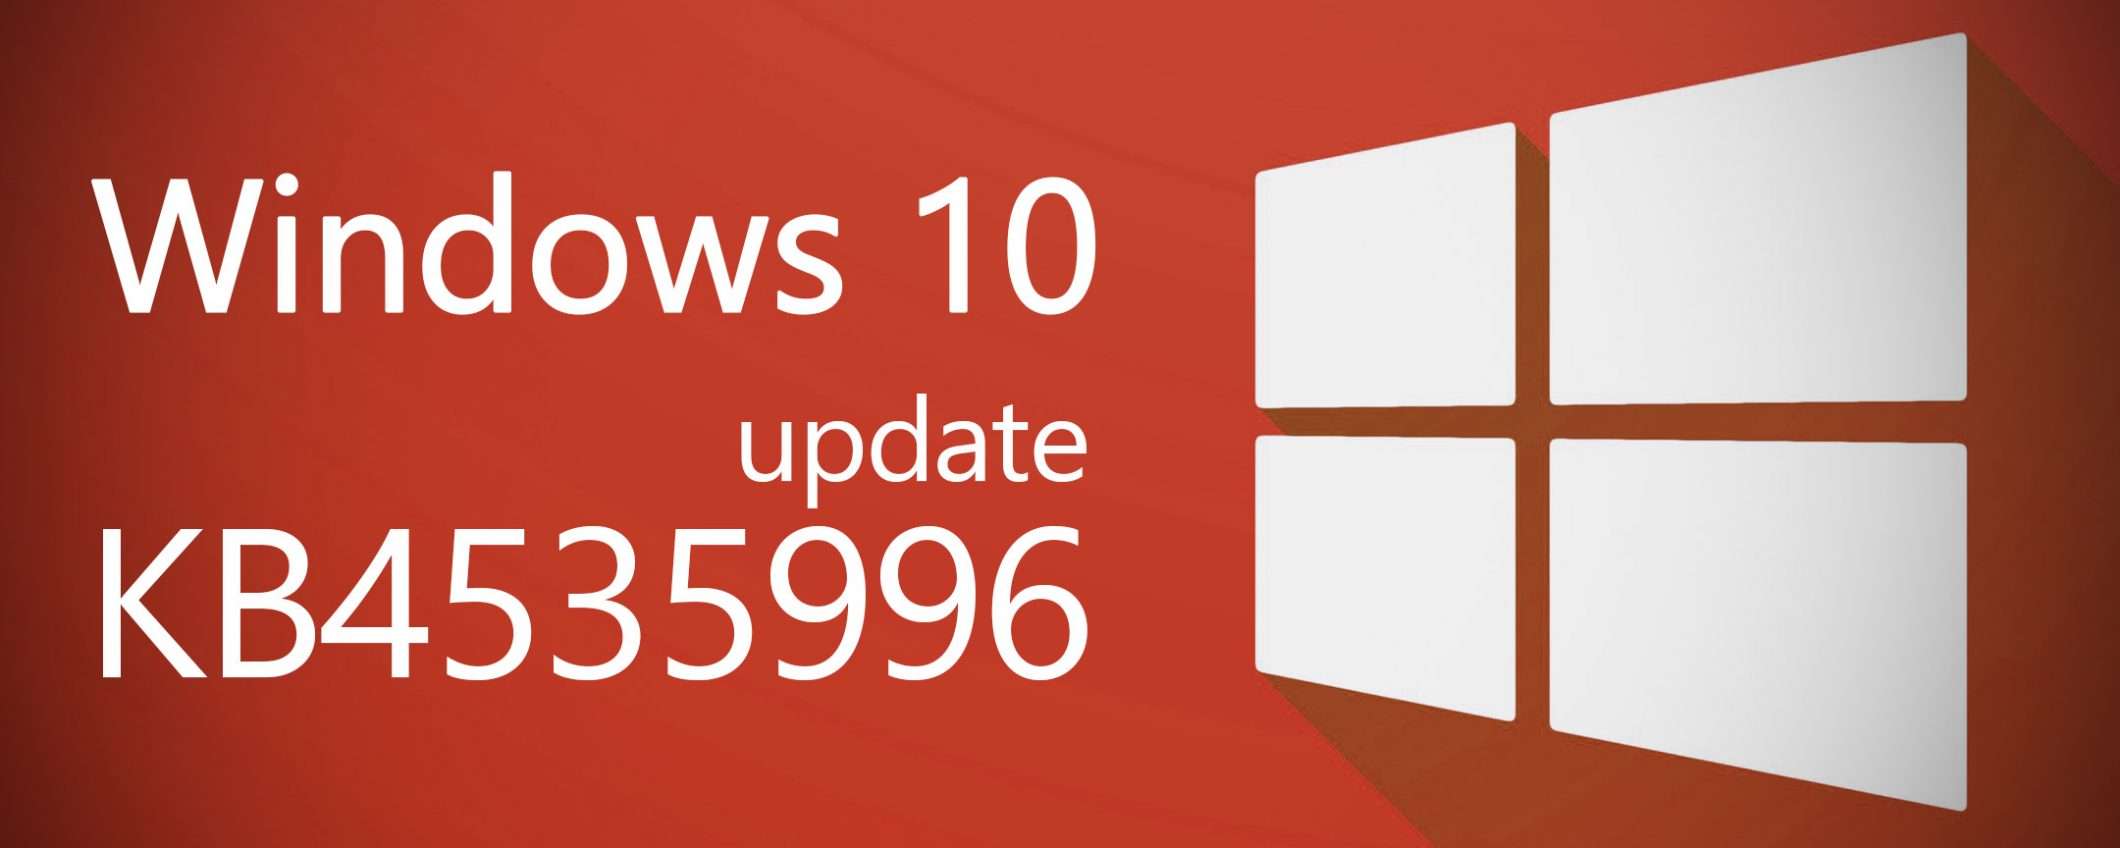 Windows 10: i bug dell'update KB4535996, capitolo 2